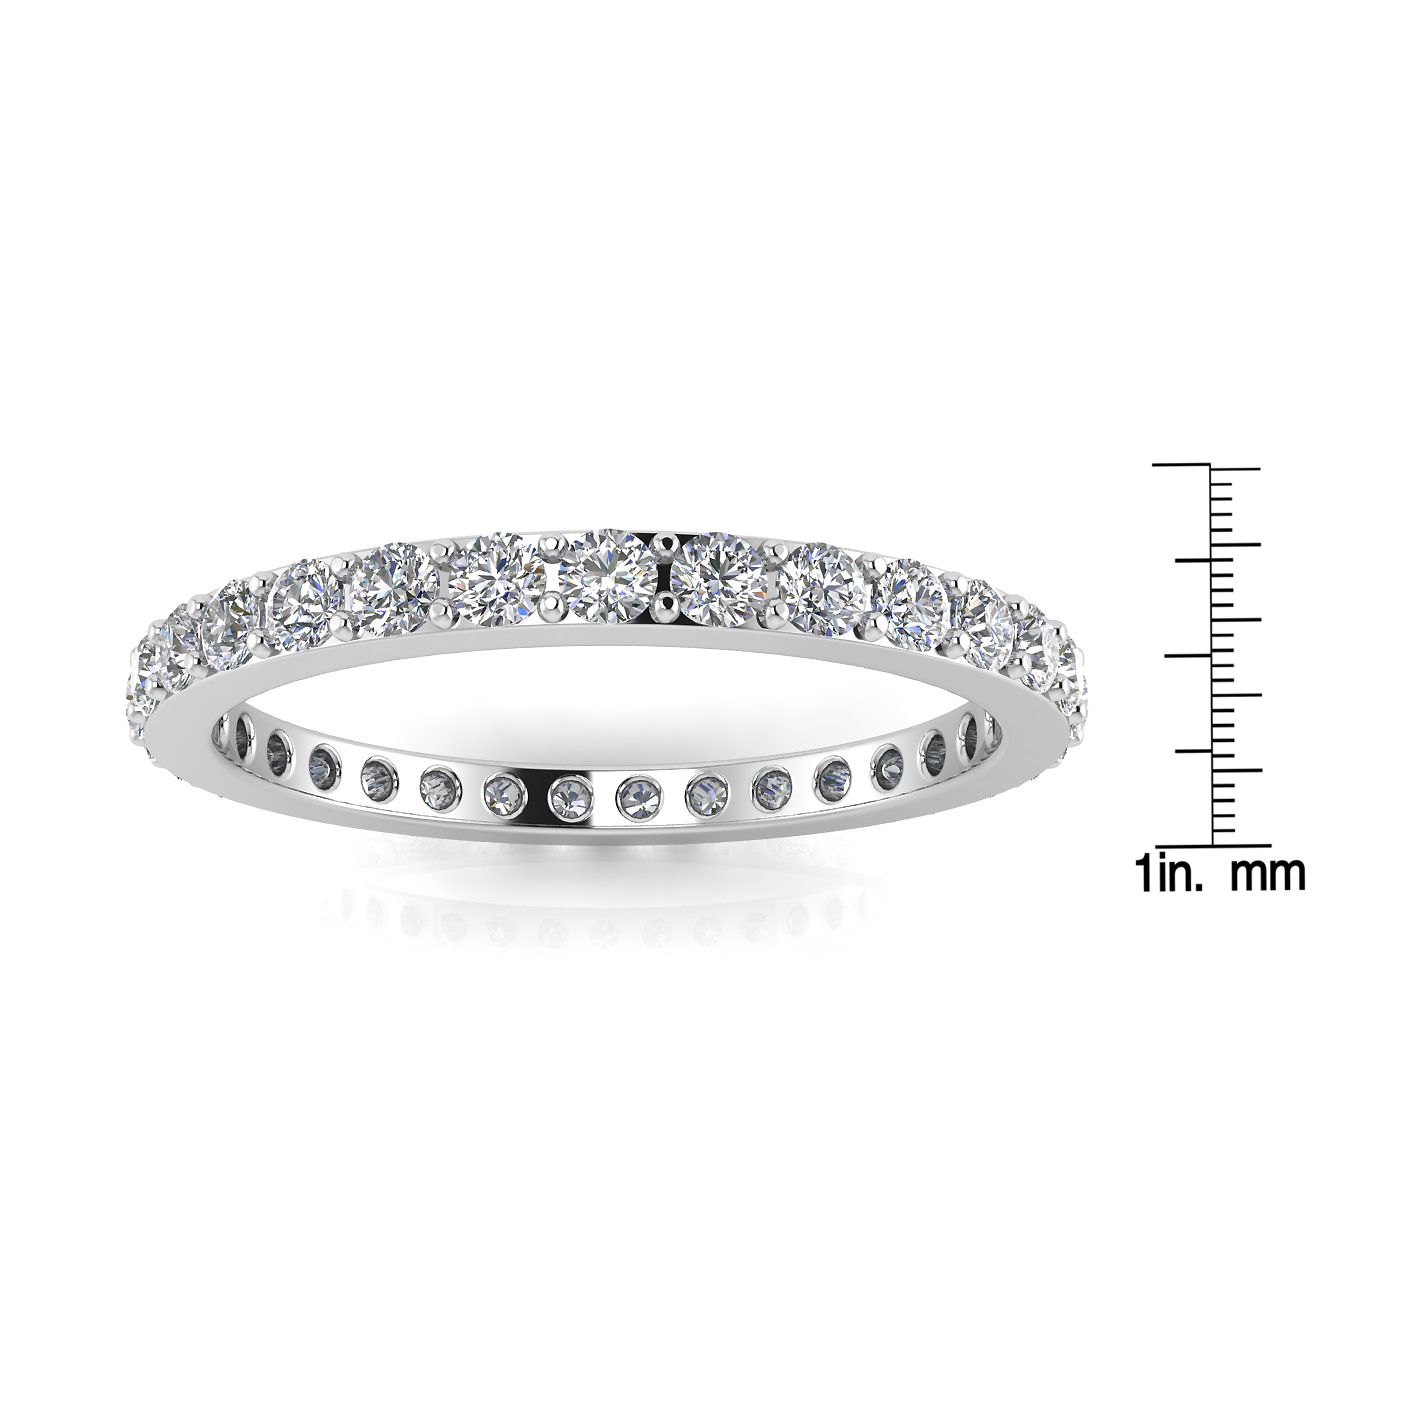 แหวนหมั้นเพชรเจียระไนทรงกลมทรงกลม Eternity Ring ทองคำขาว 14k (1.43 กะรัต) ขนาดแหวน 6